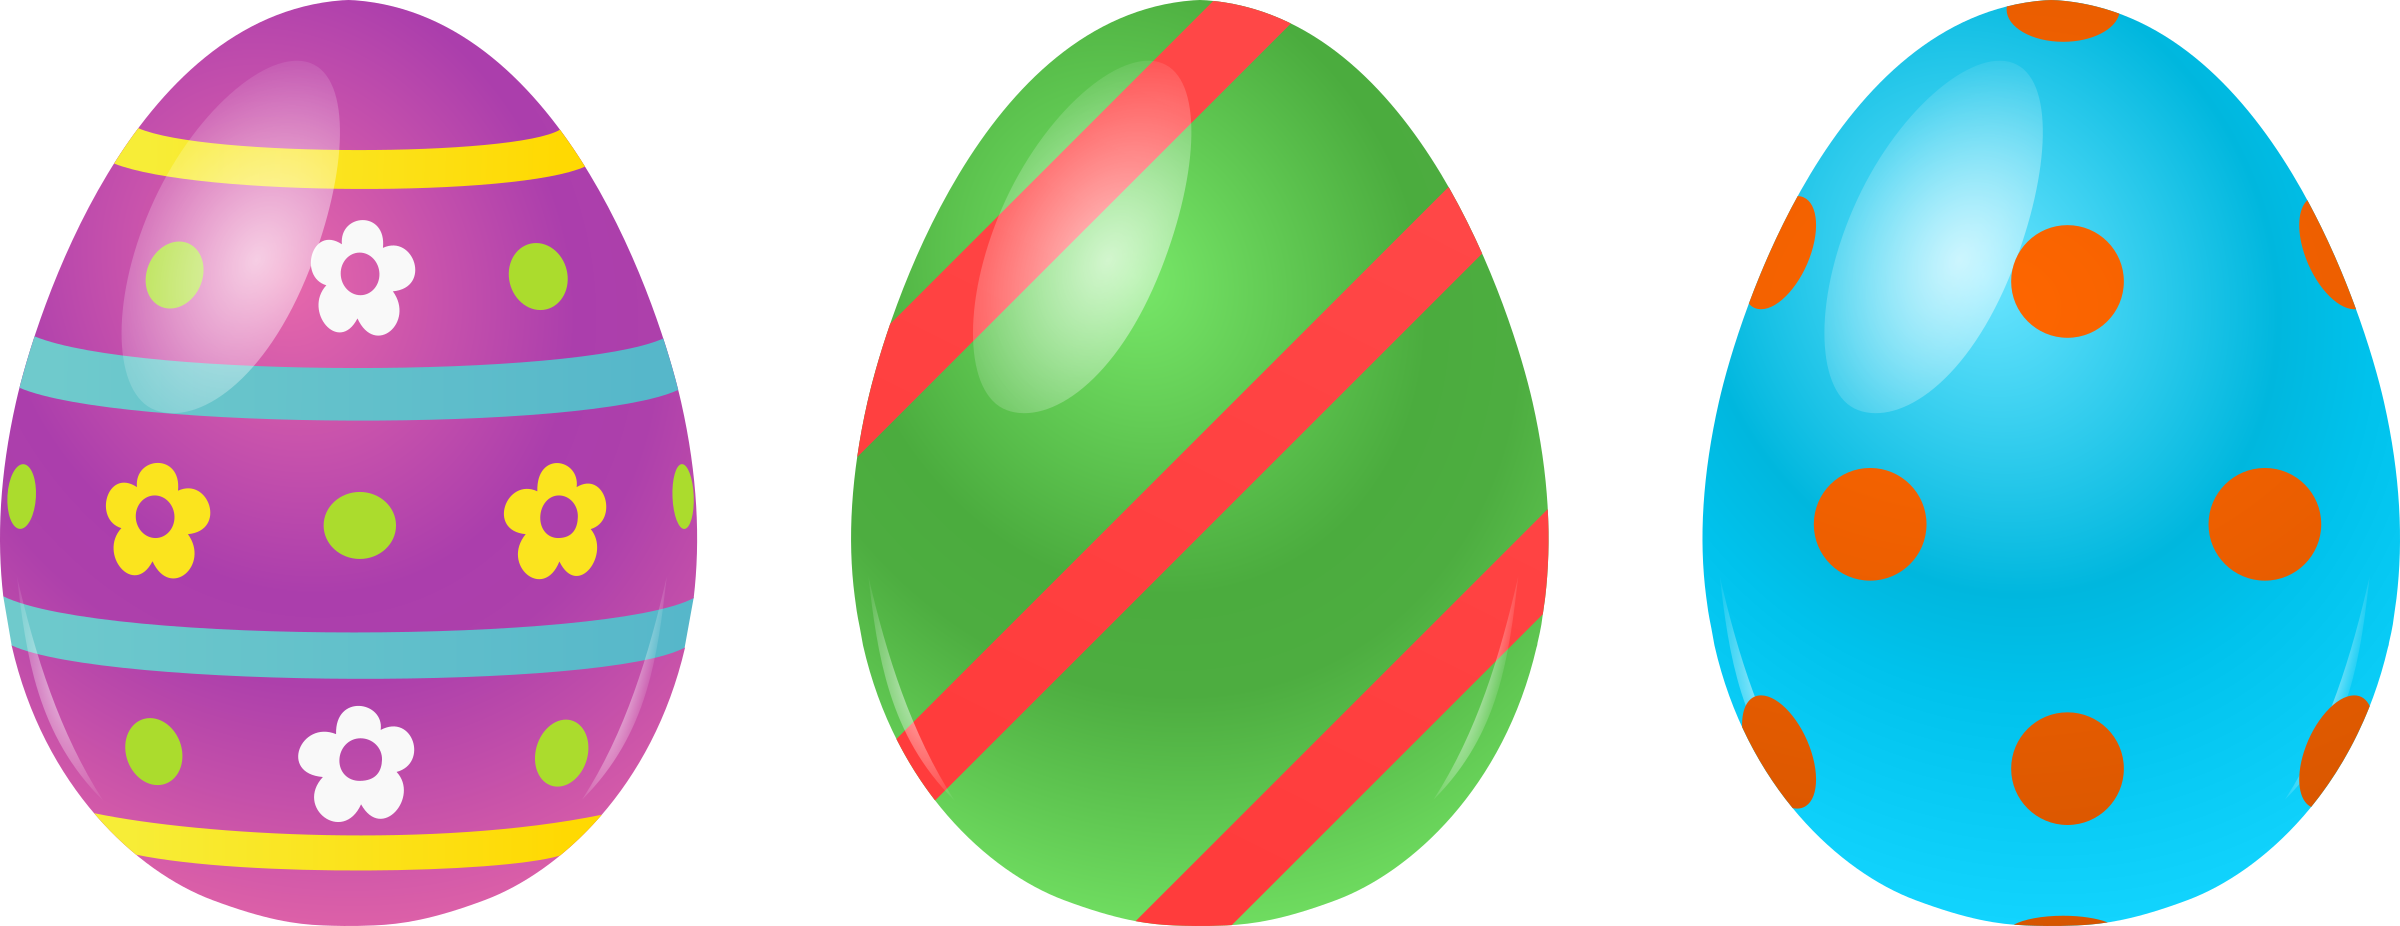 Красочное пасхальное яйцо Скачать PNG Image